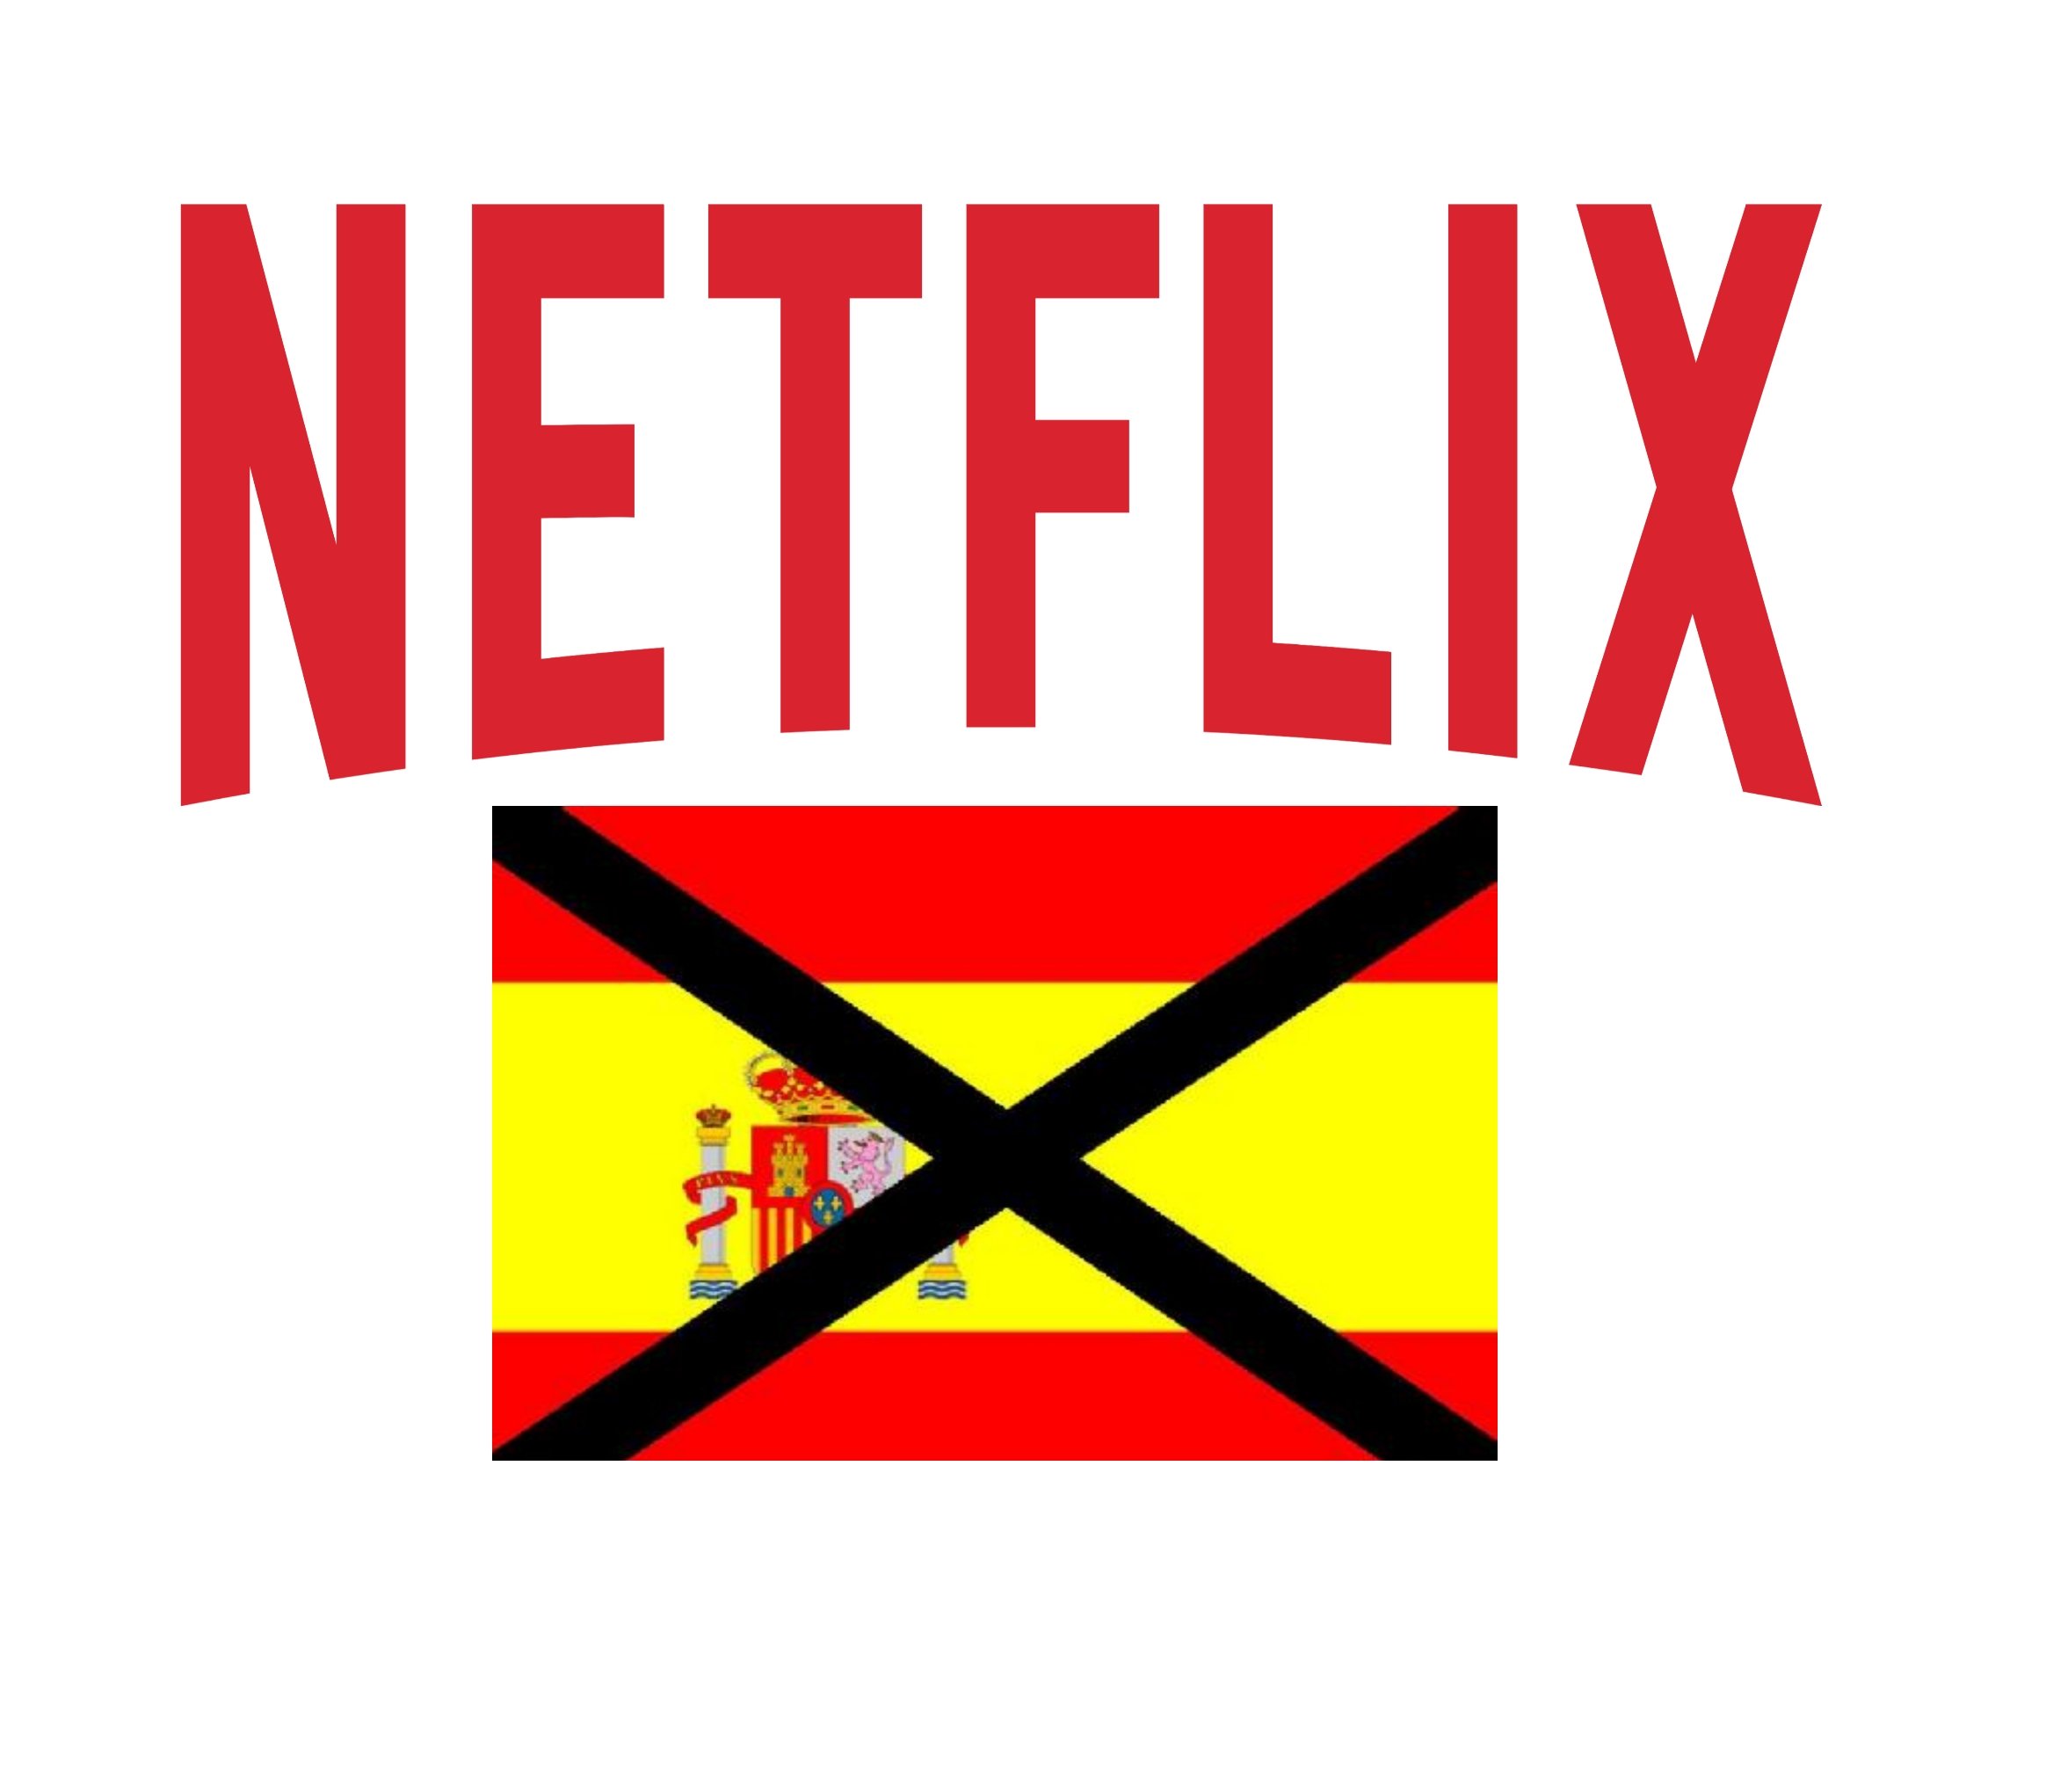 L'unionisme irat contra Netflix per dir literalment que Catalunya no és Espanya